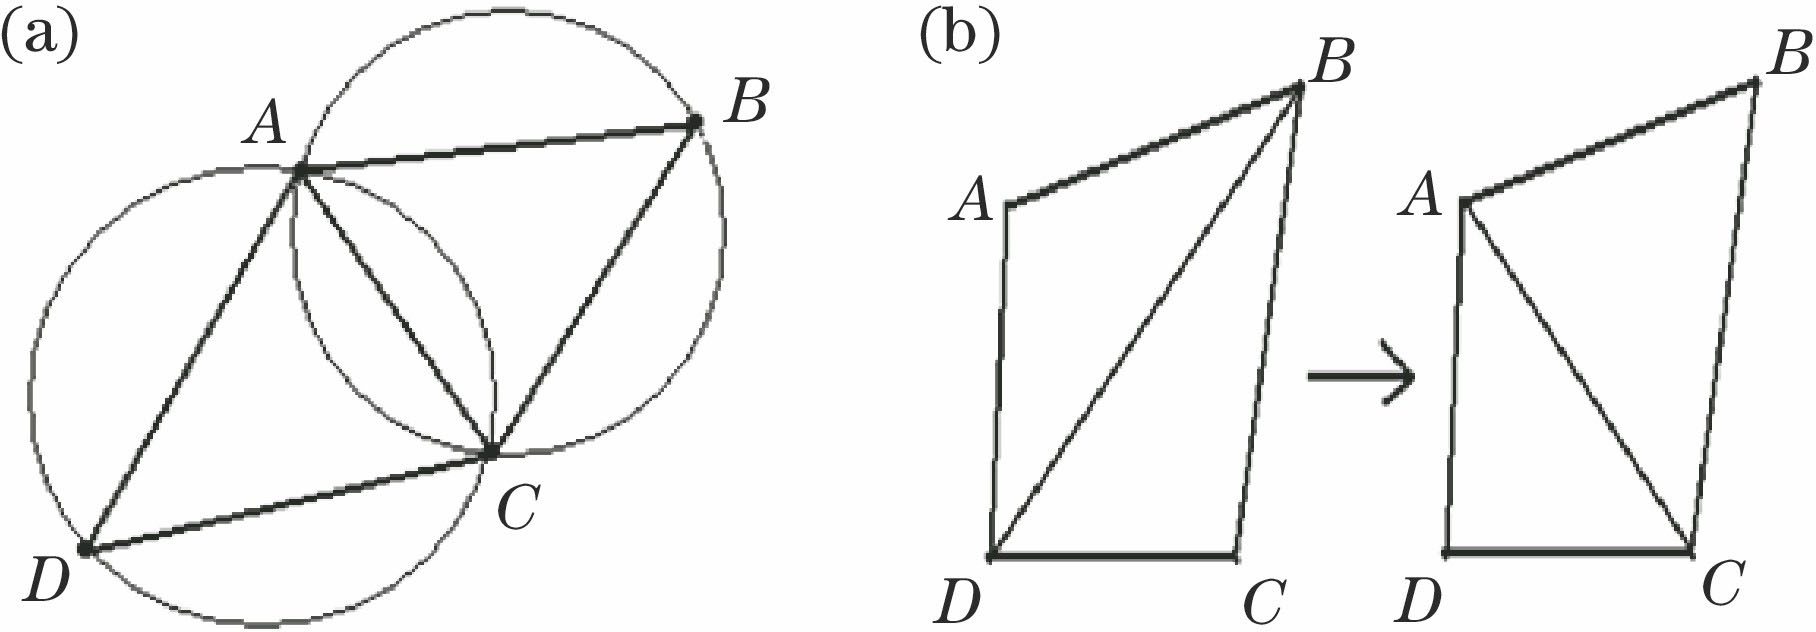 Characteristic diagram. (a) Empty circle characteristics; (b) maximized minimum angle characteristics